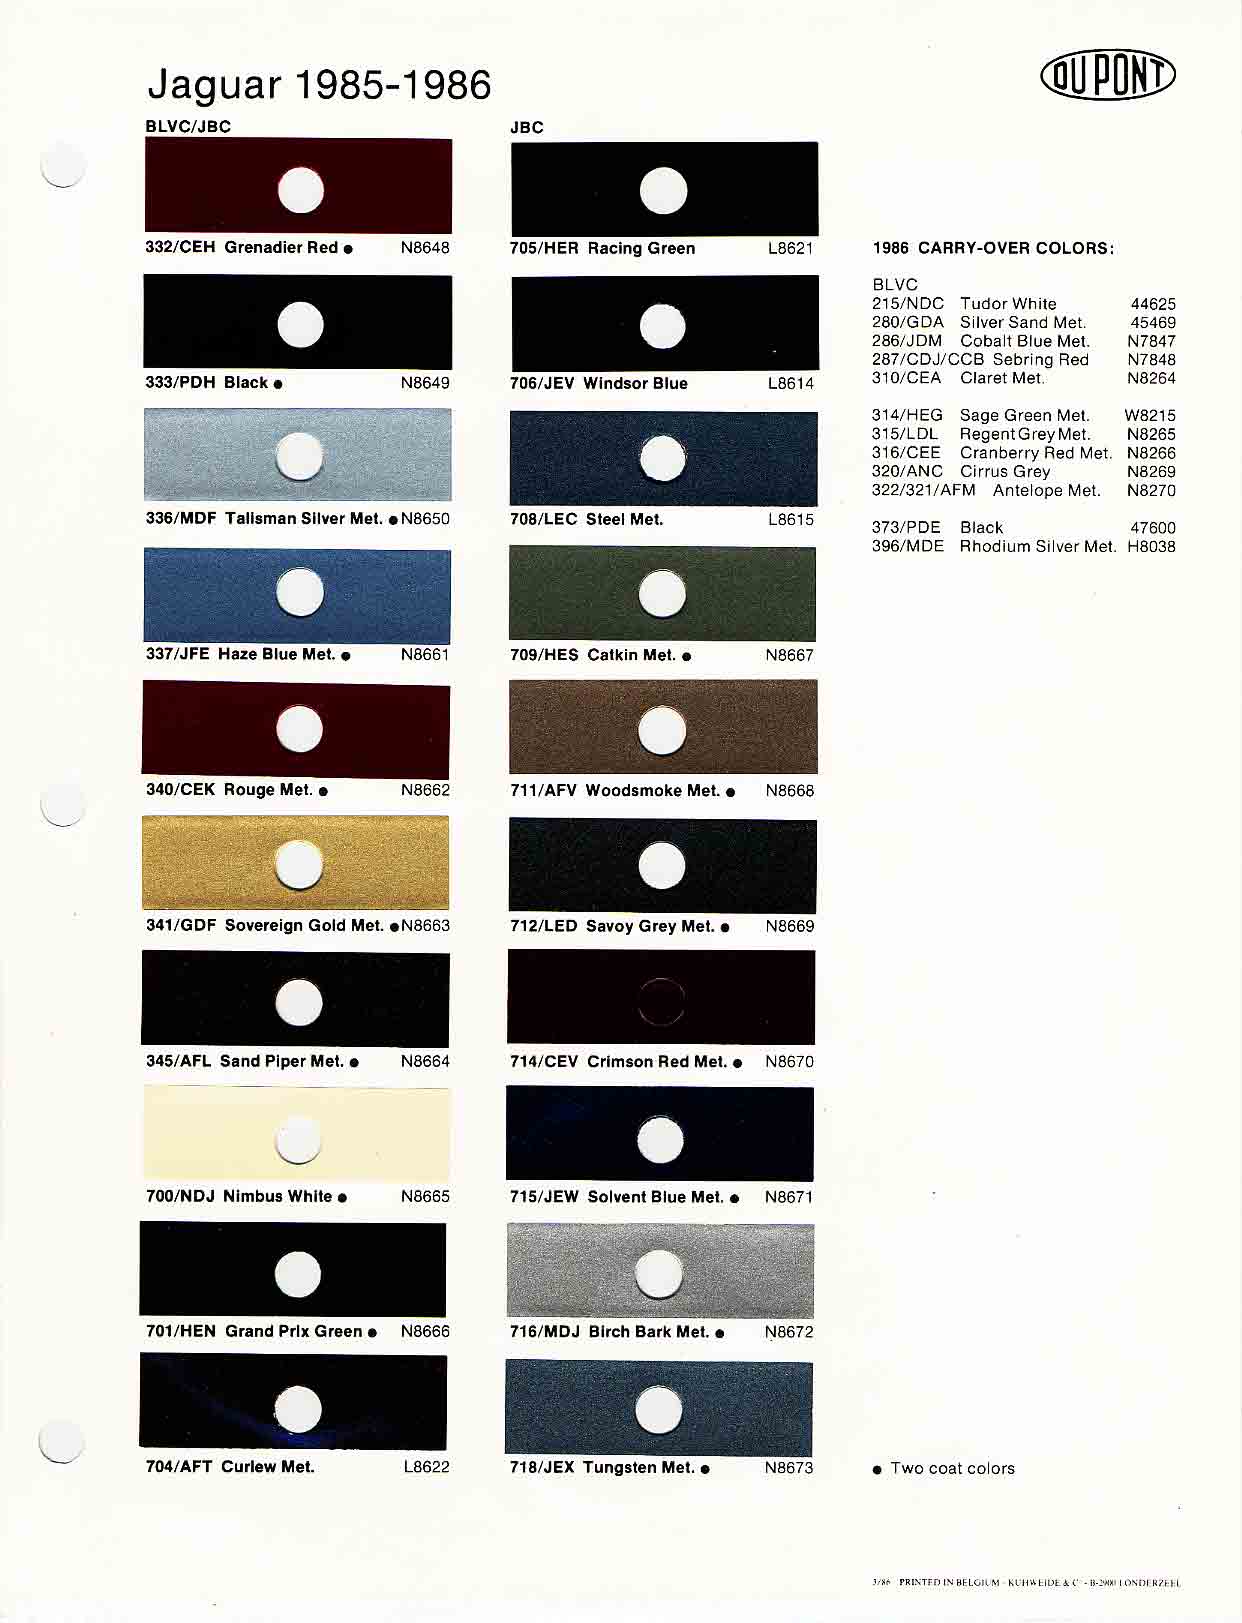 Jaguar Paint Codes And Color Charts